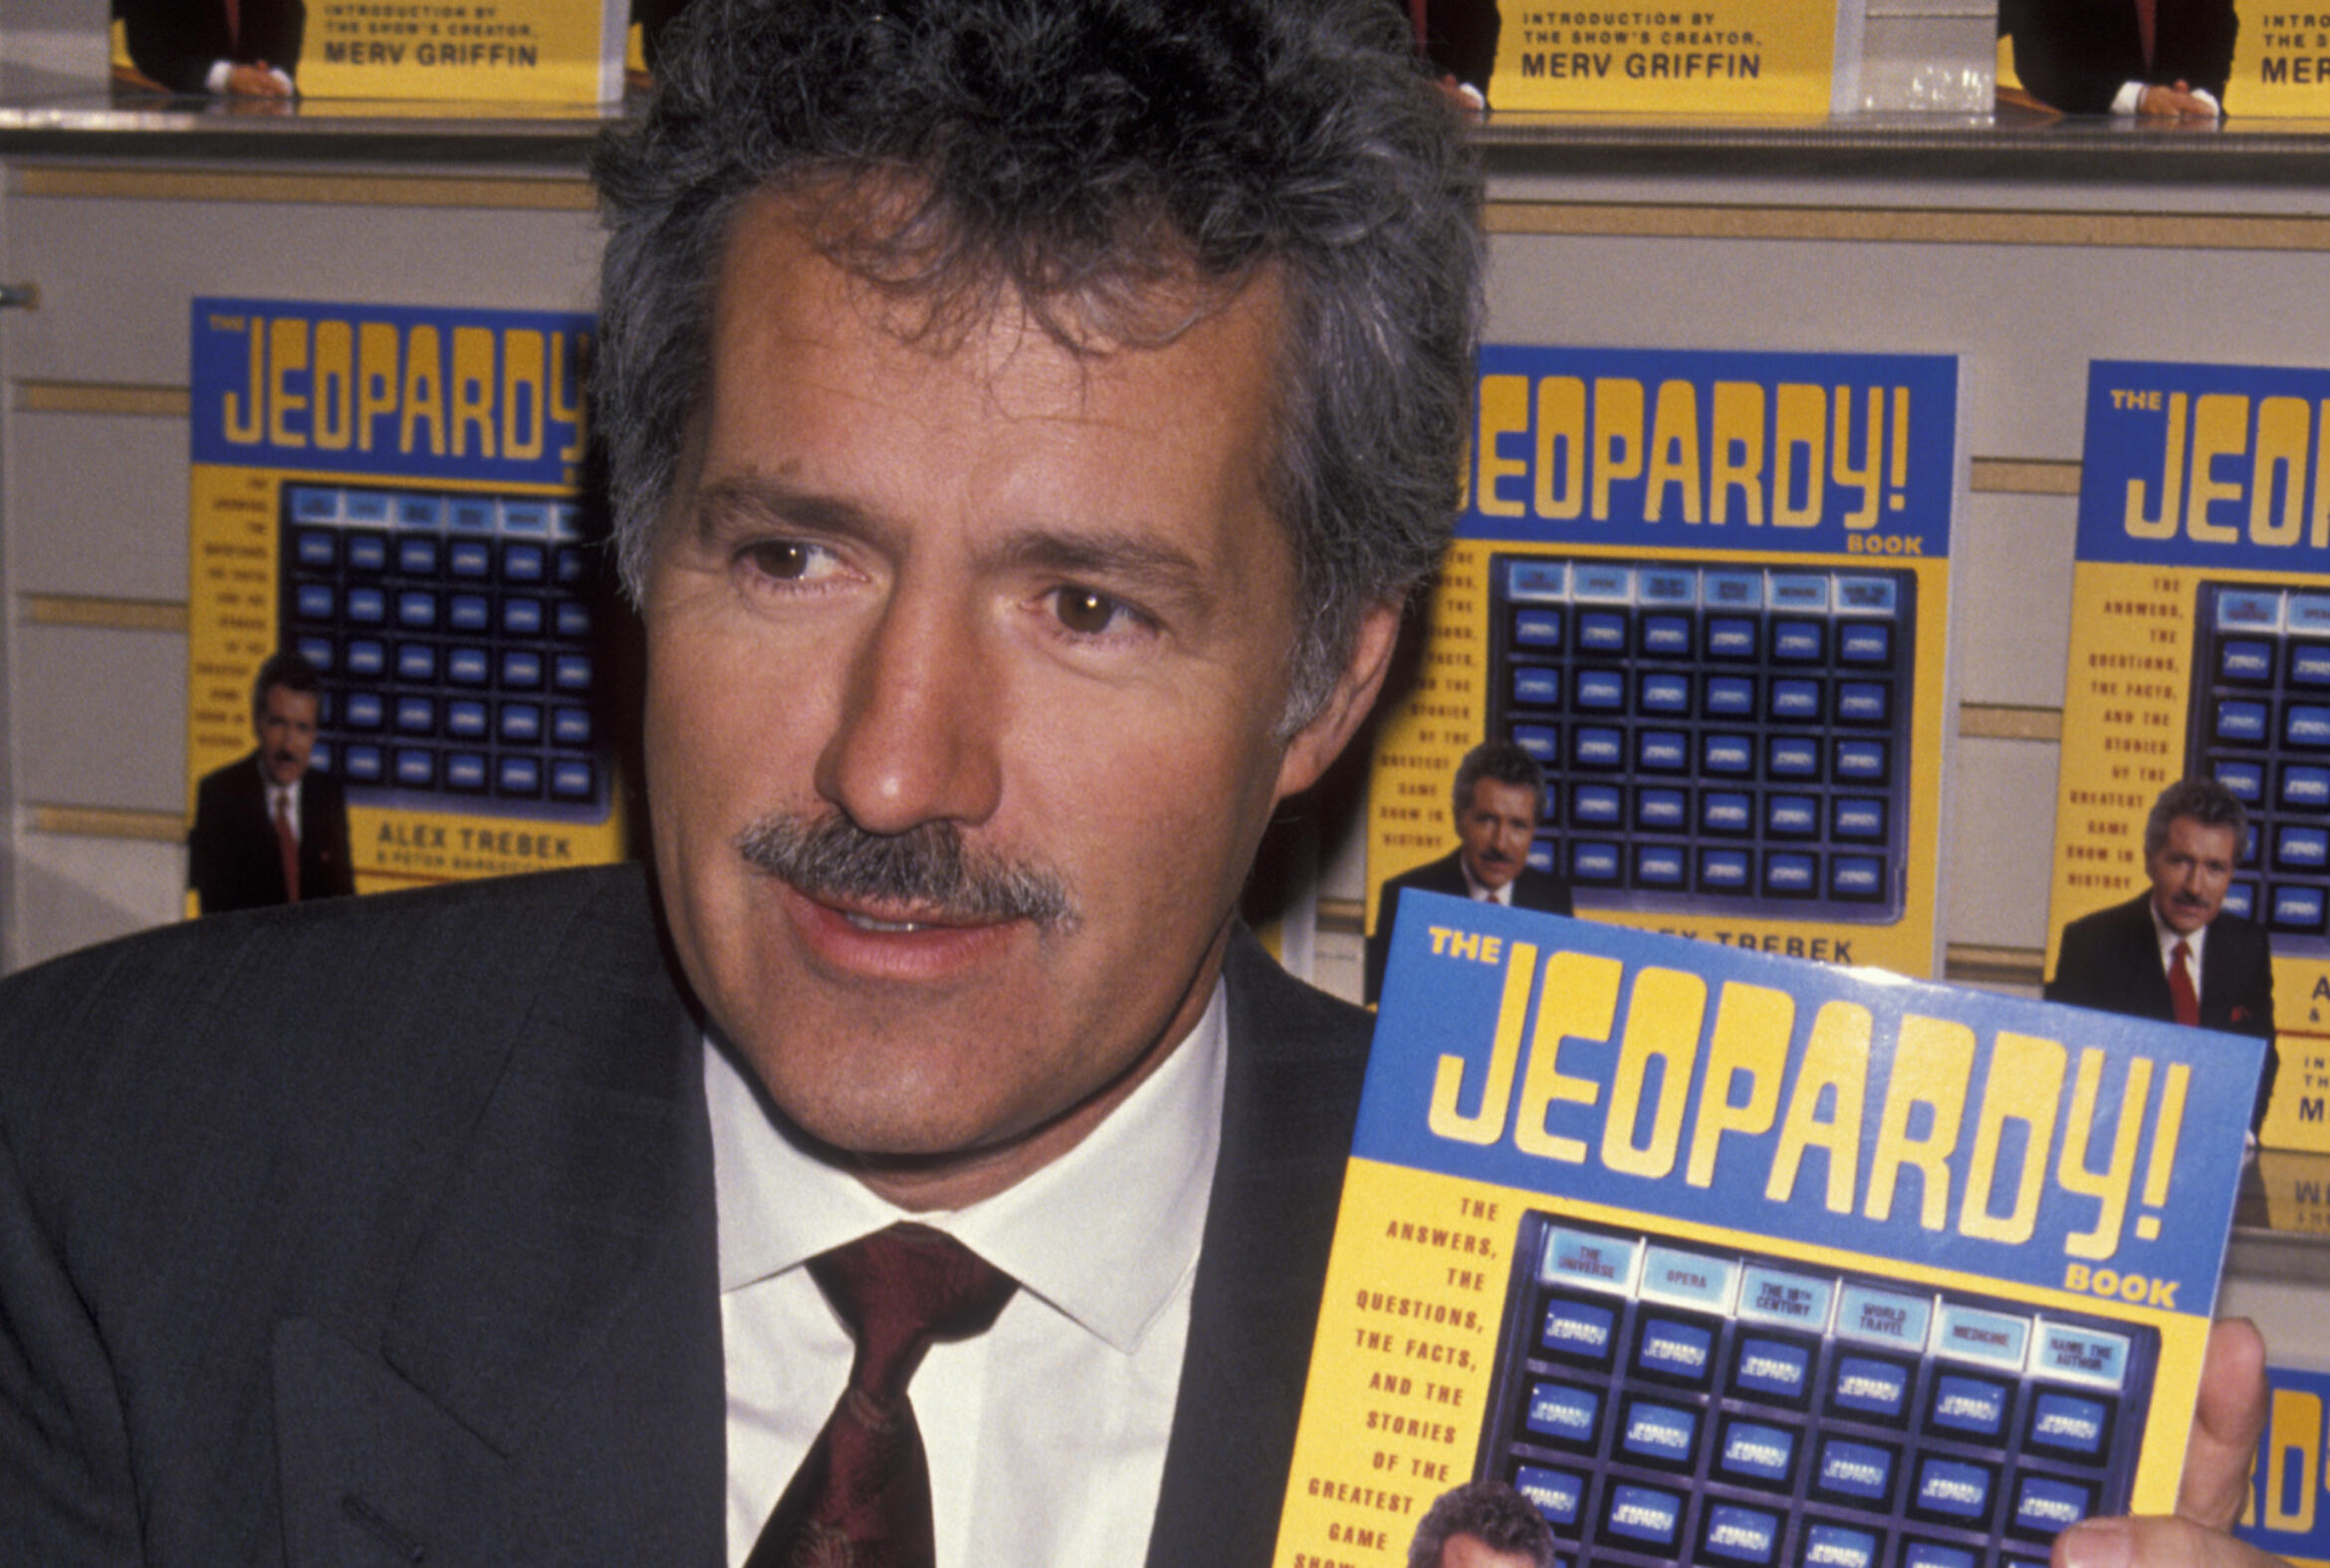 alex-trebek-jeopardy-book-1990.jpg